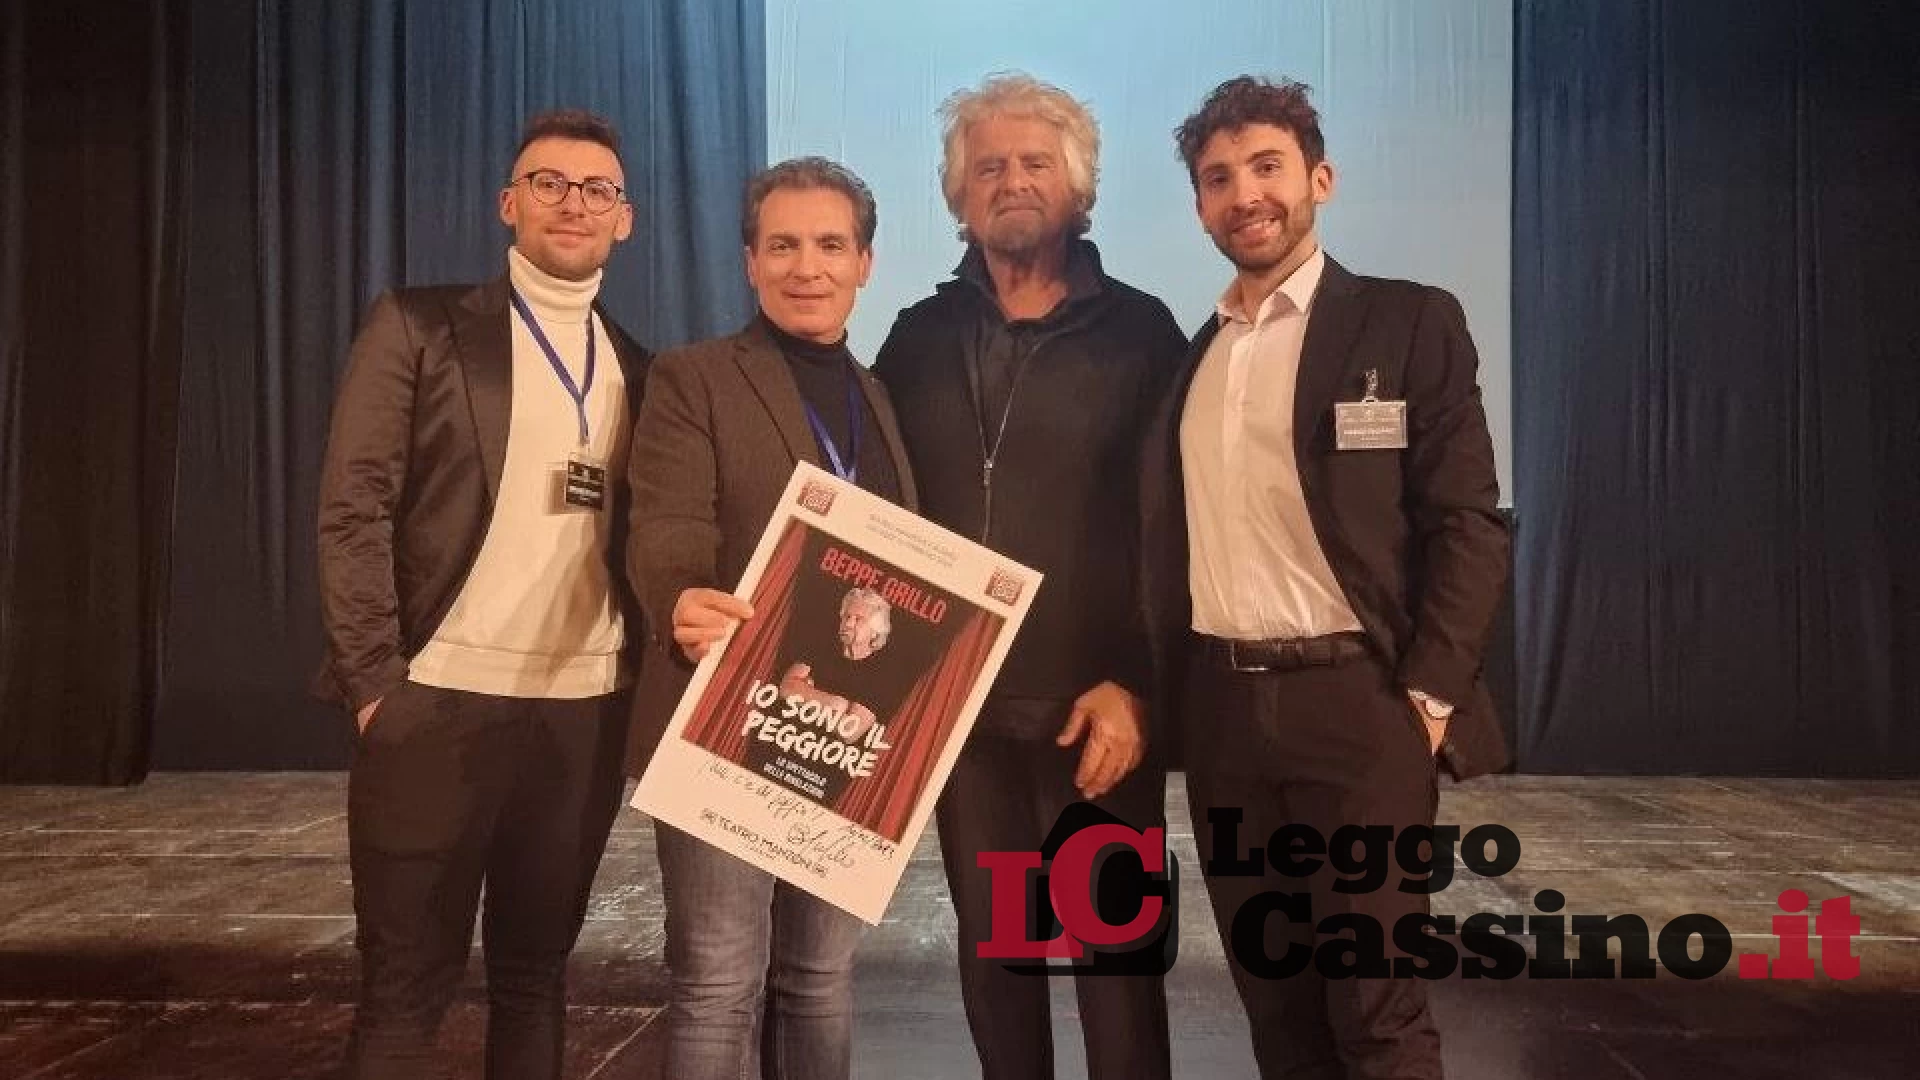 RadioCassino-Teatro Manzoni “colpisce” ancora: Beppe Grillo diverte tutti